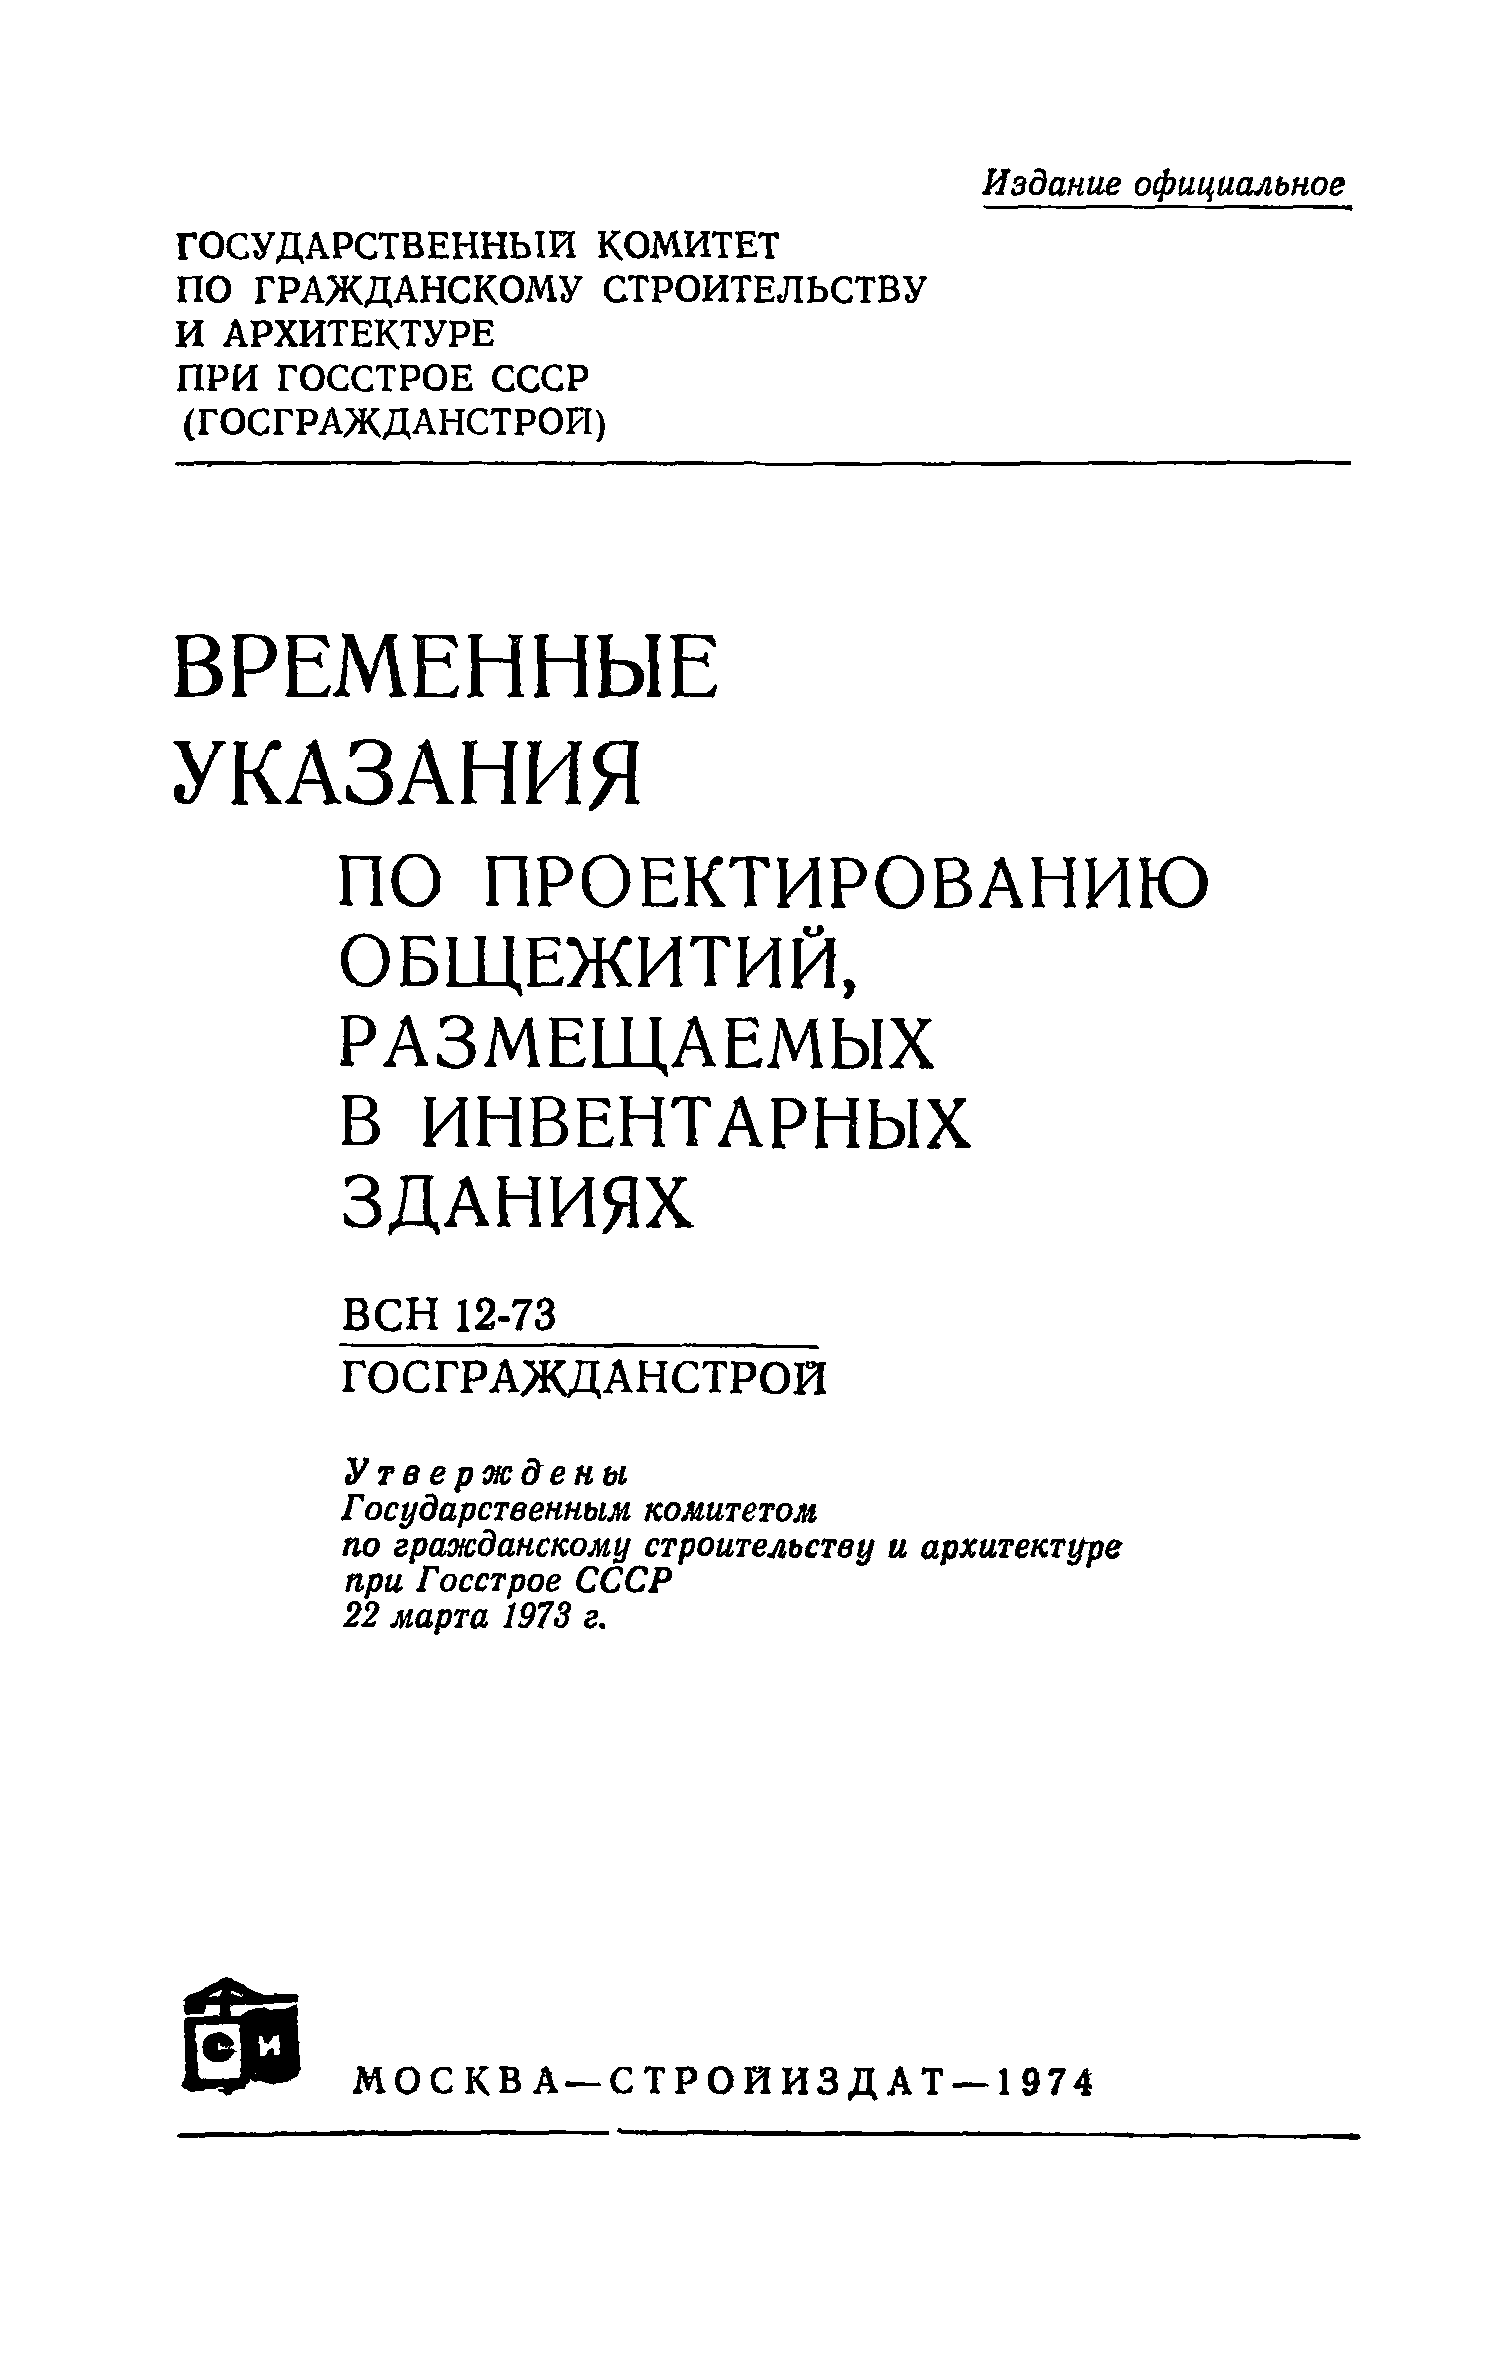 ВСН 12-73/Госгражданстрой